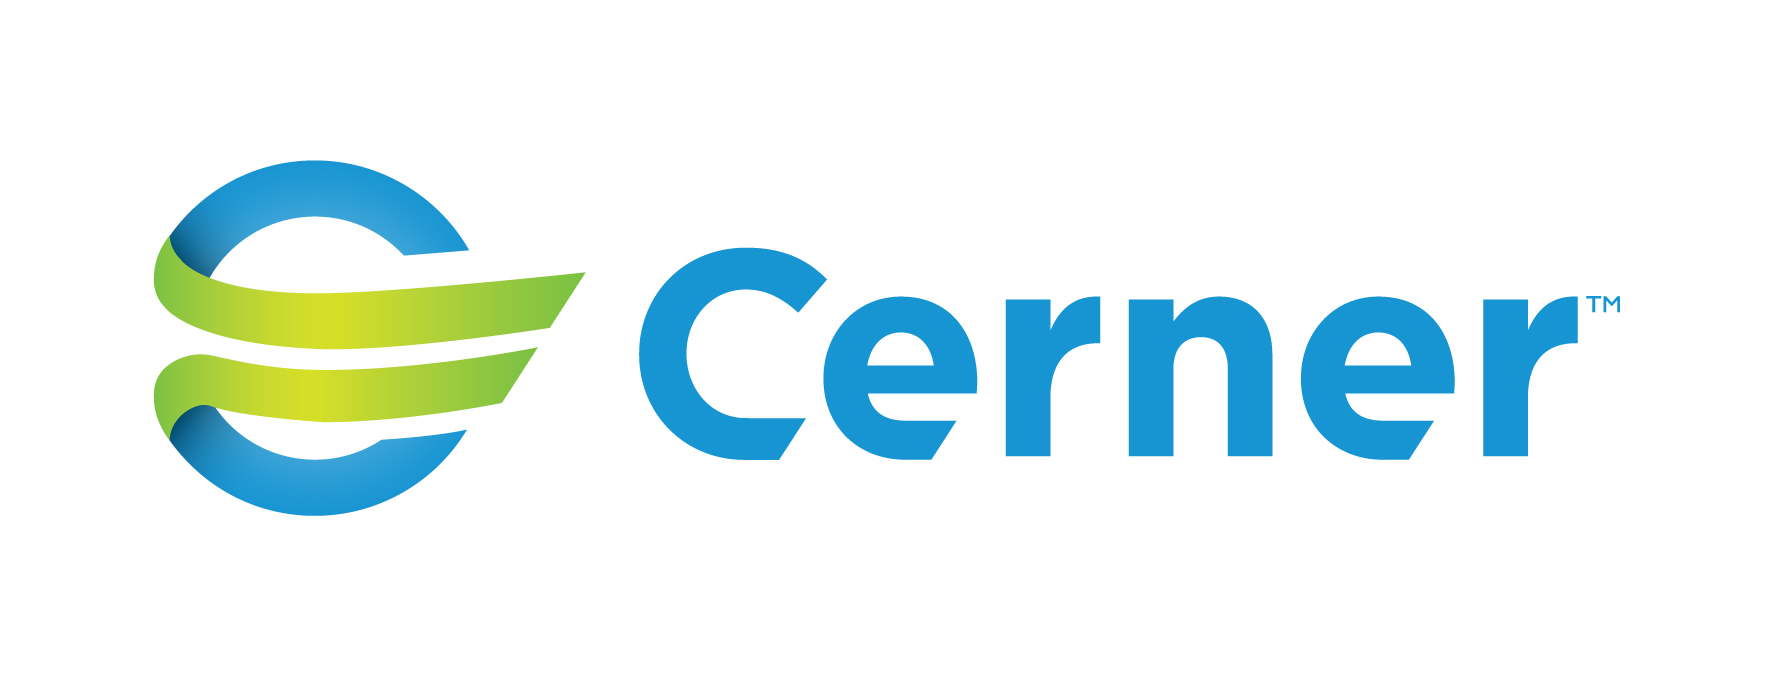 Cerner_CMYK_Standard_horizontal